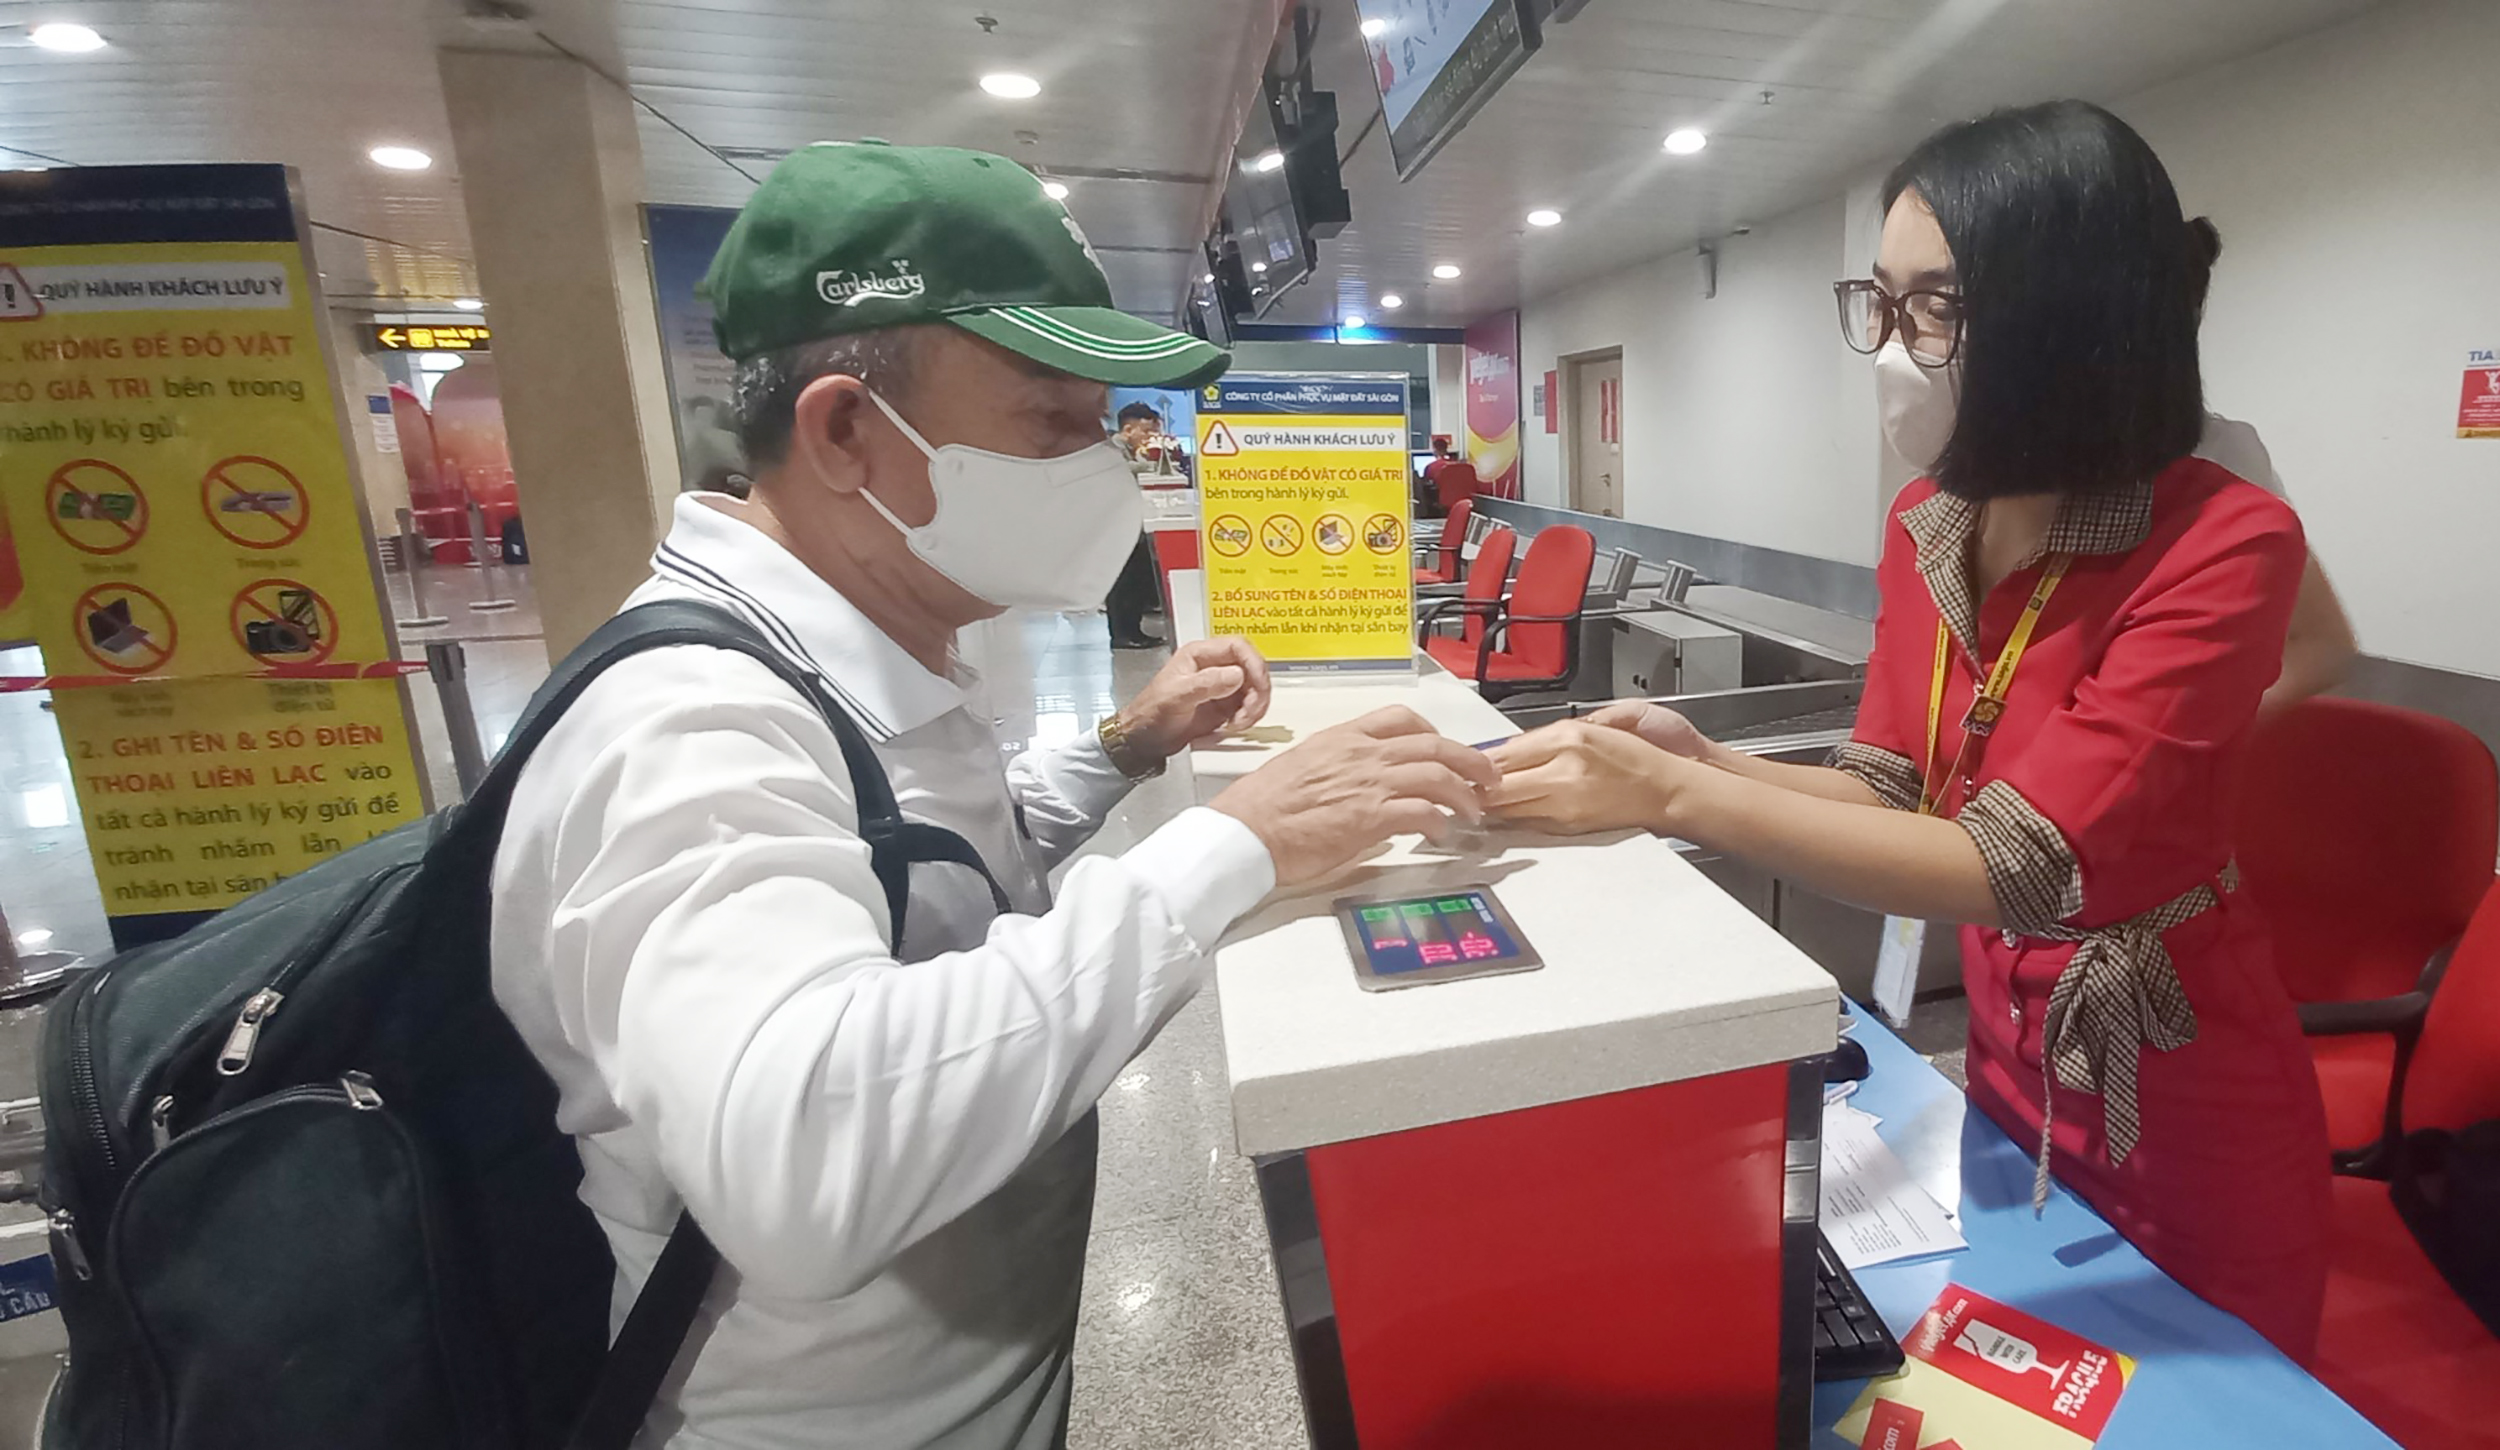 Hành khách làm thủ tục tại sân bay Tân Sơn Nhất sáng 5/2 (26 Tết) - ảnh: TL